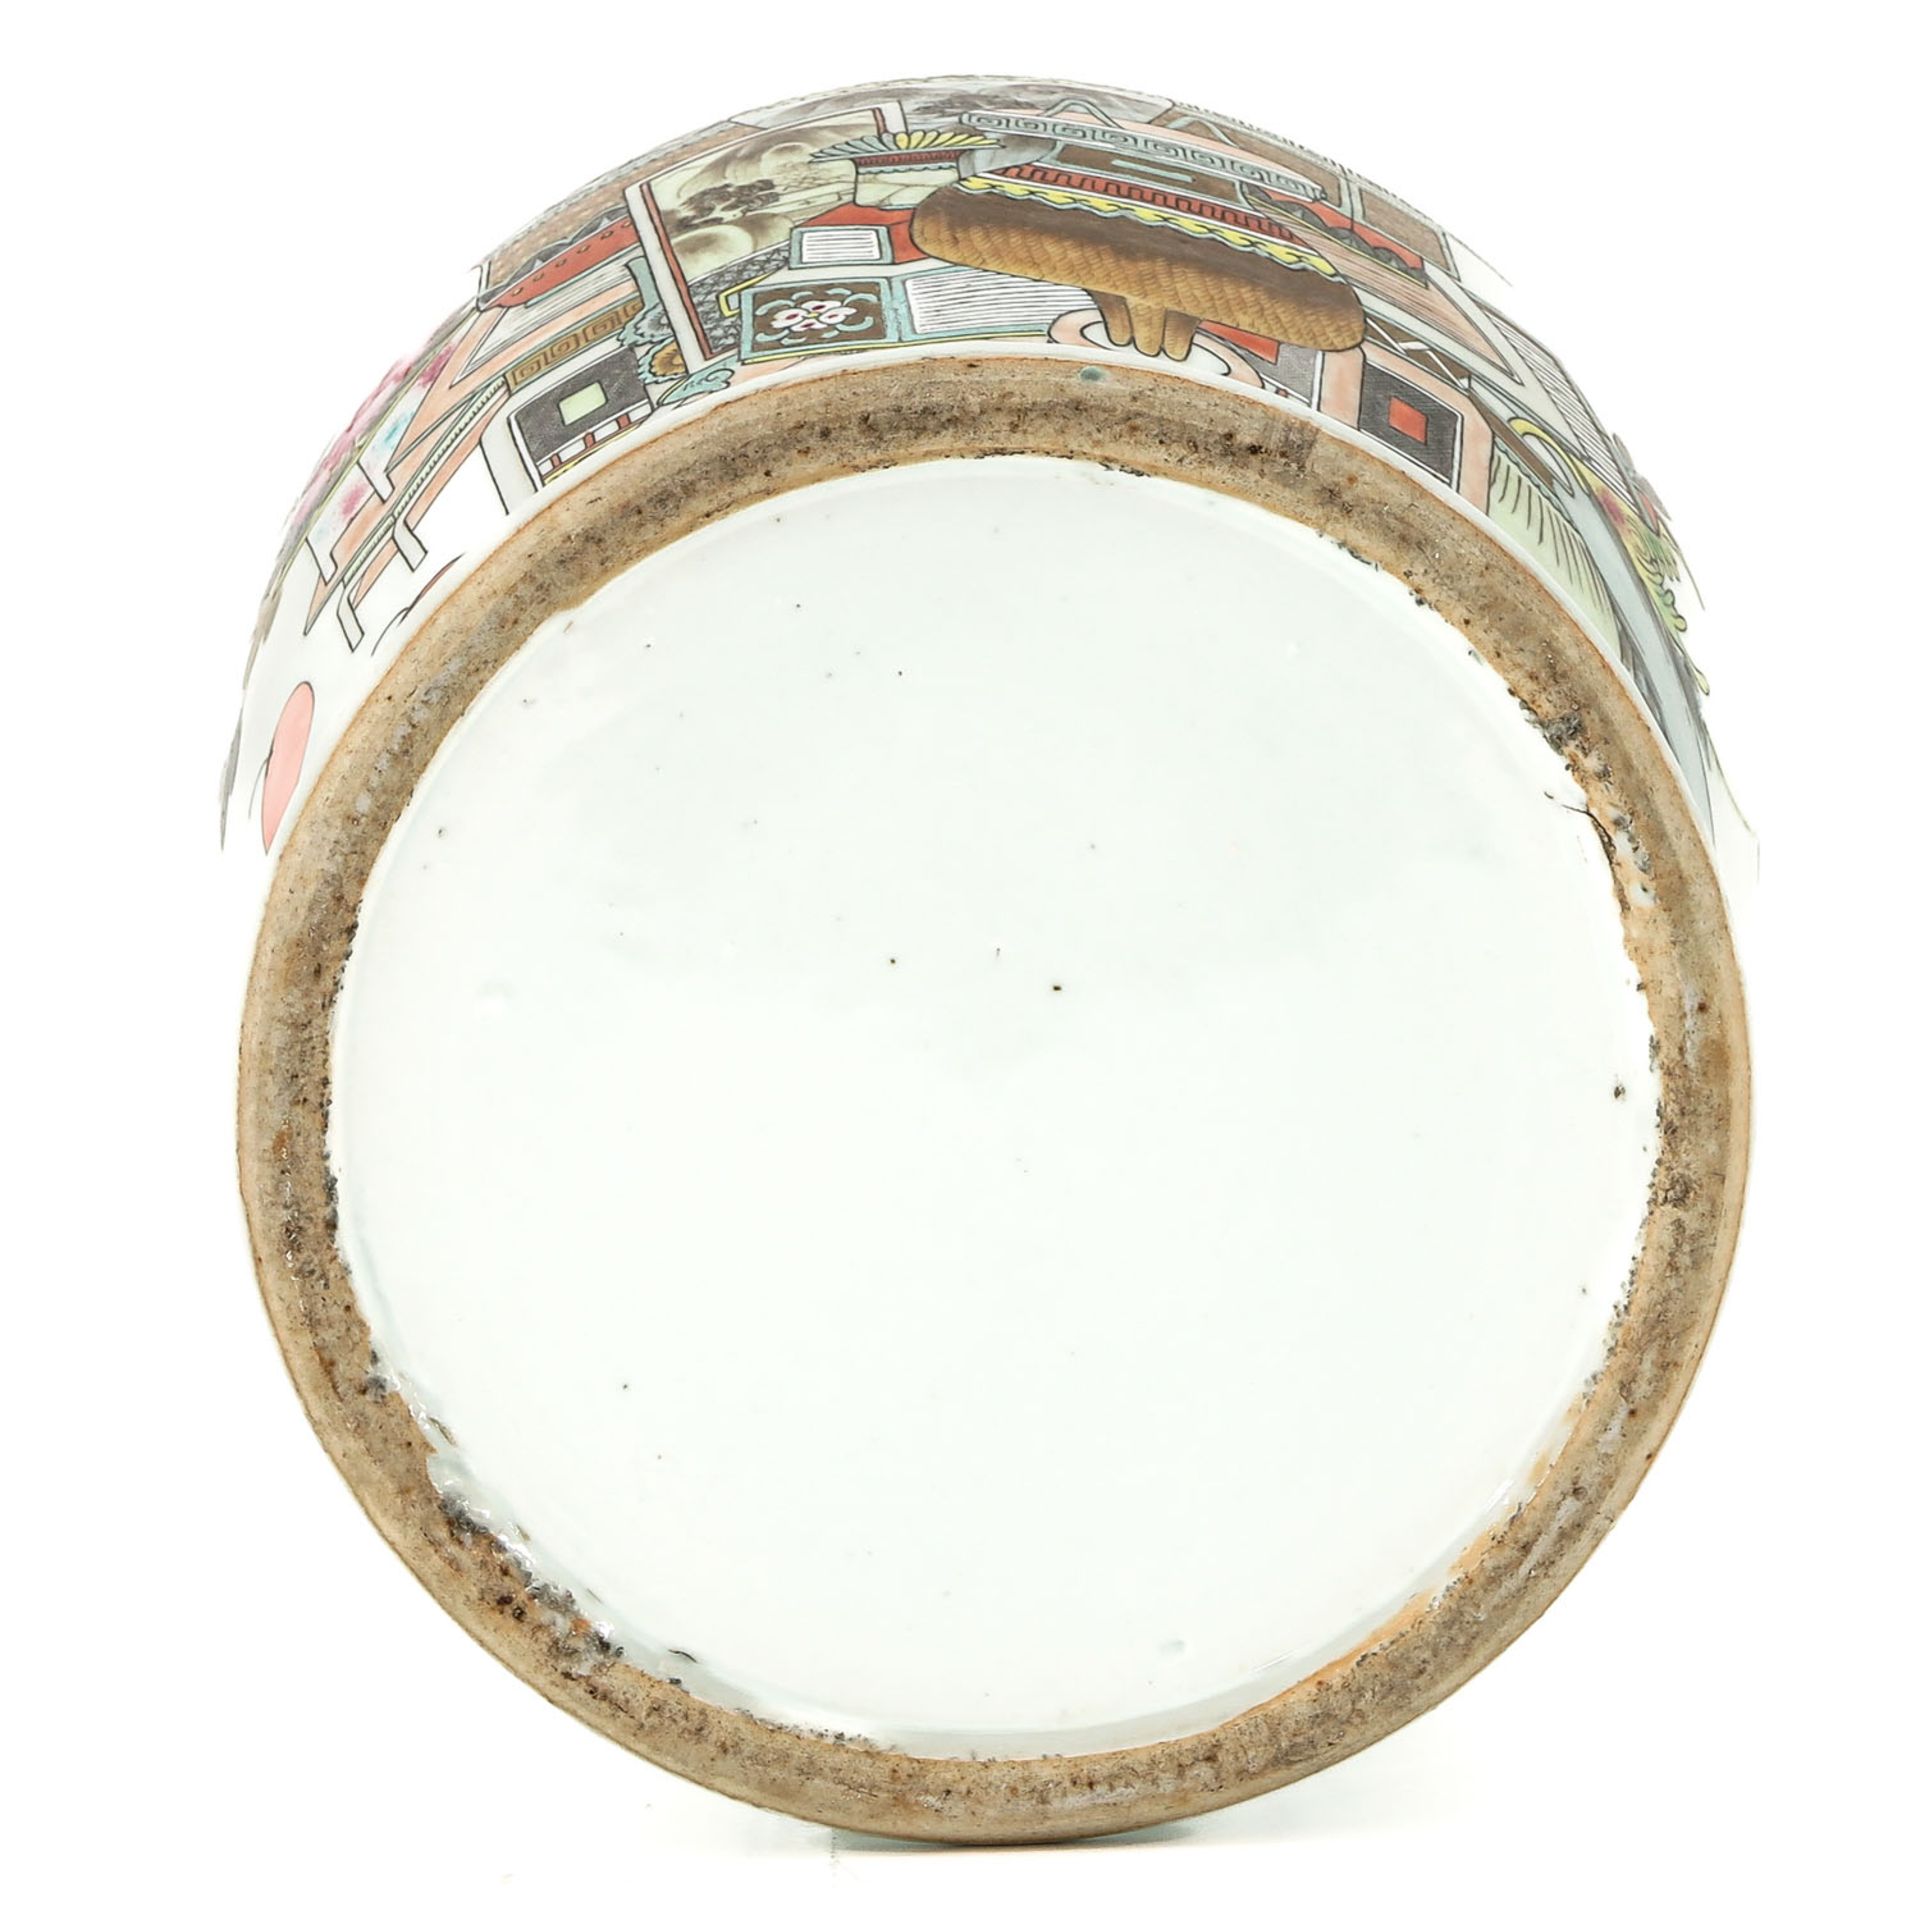 A Polychrome Decor Jar - Image 6 of 10